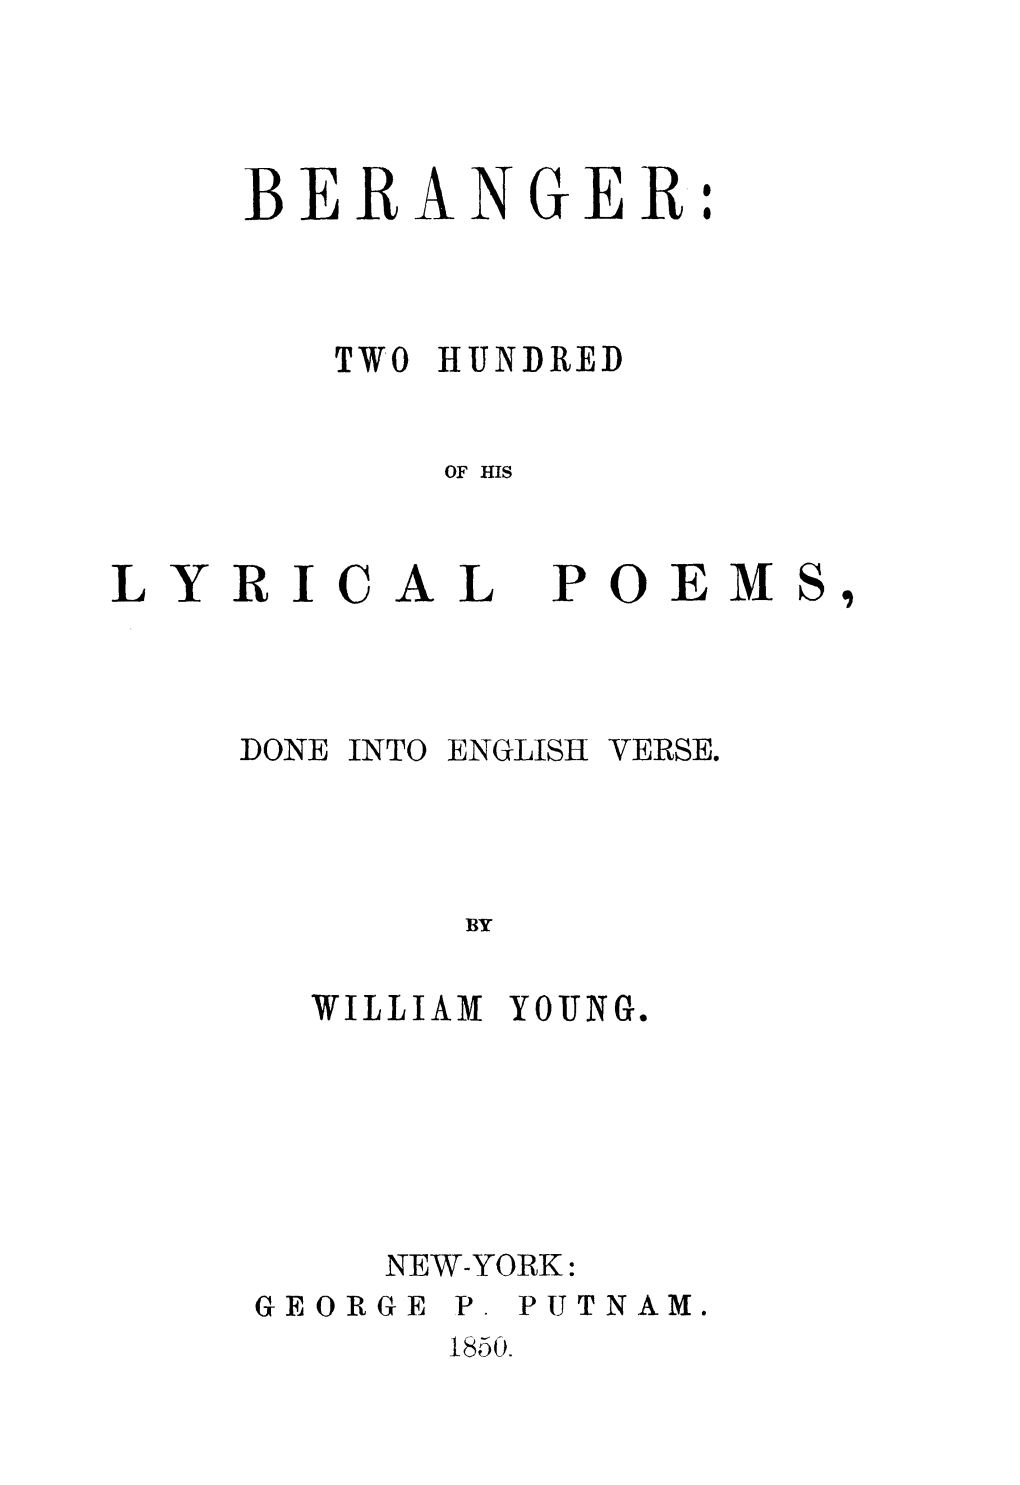 Beranger: Two Hundred of His Lyrical Poems